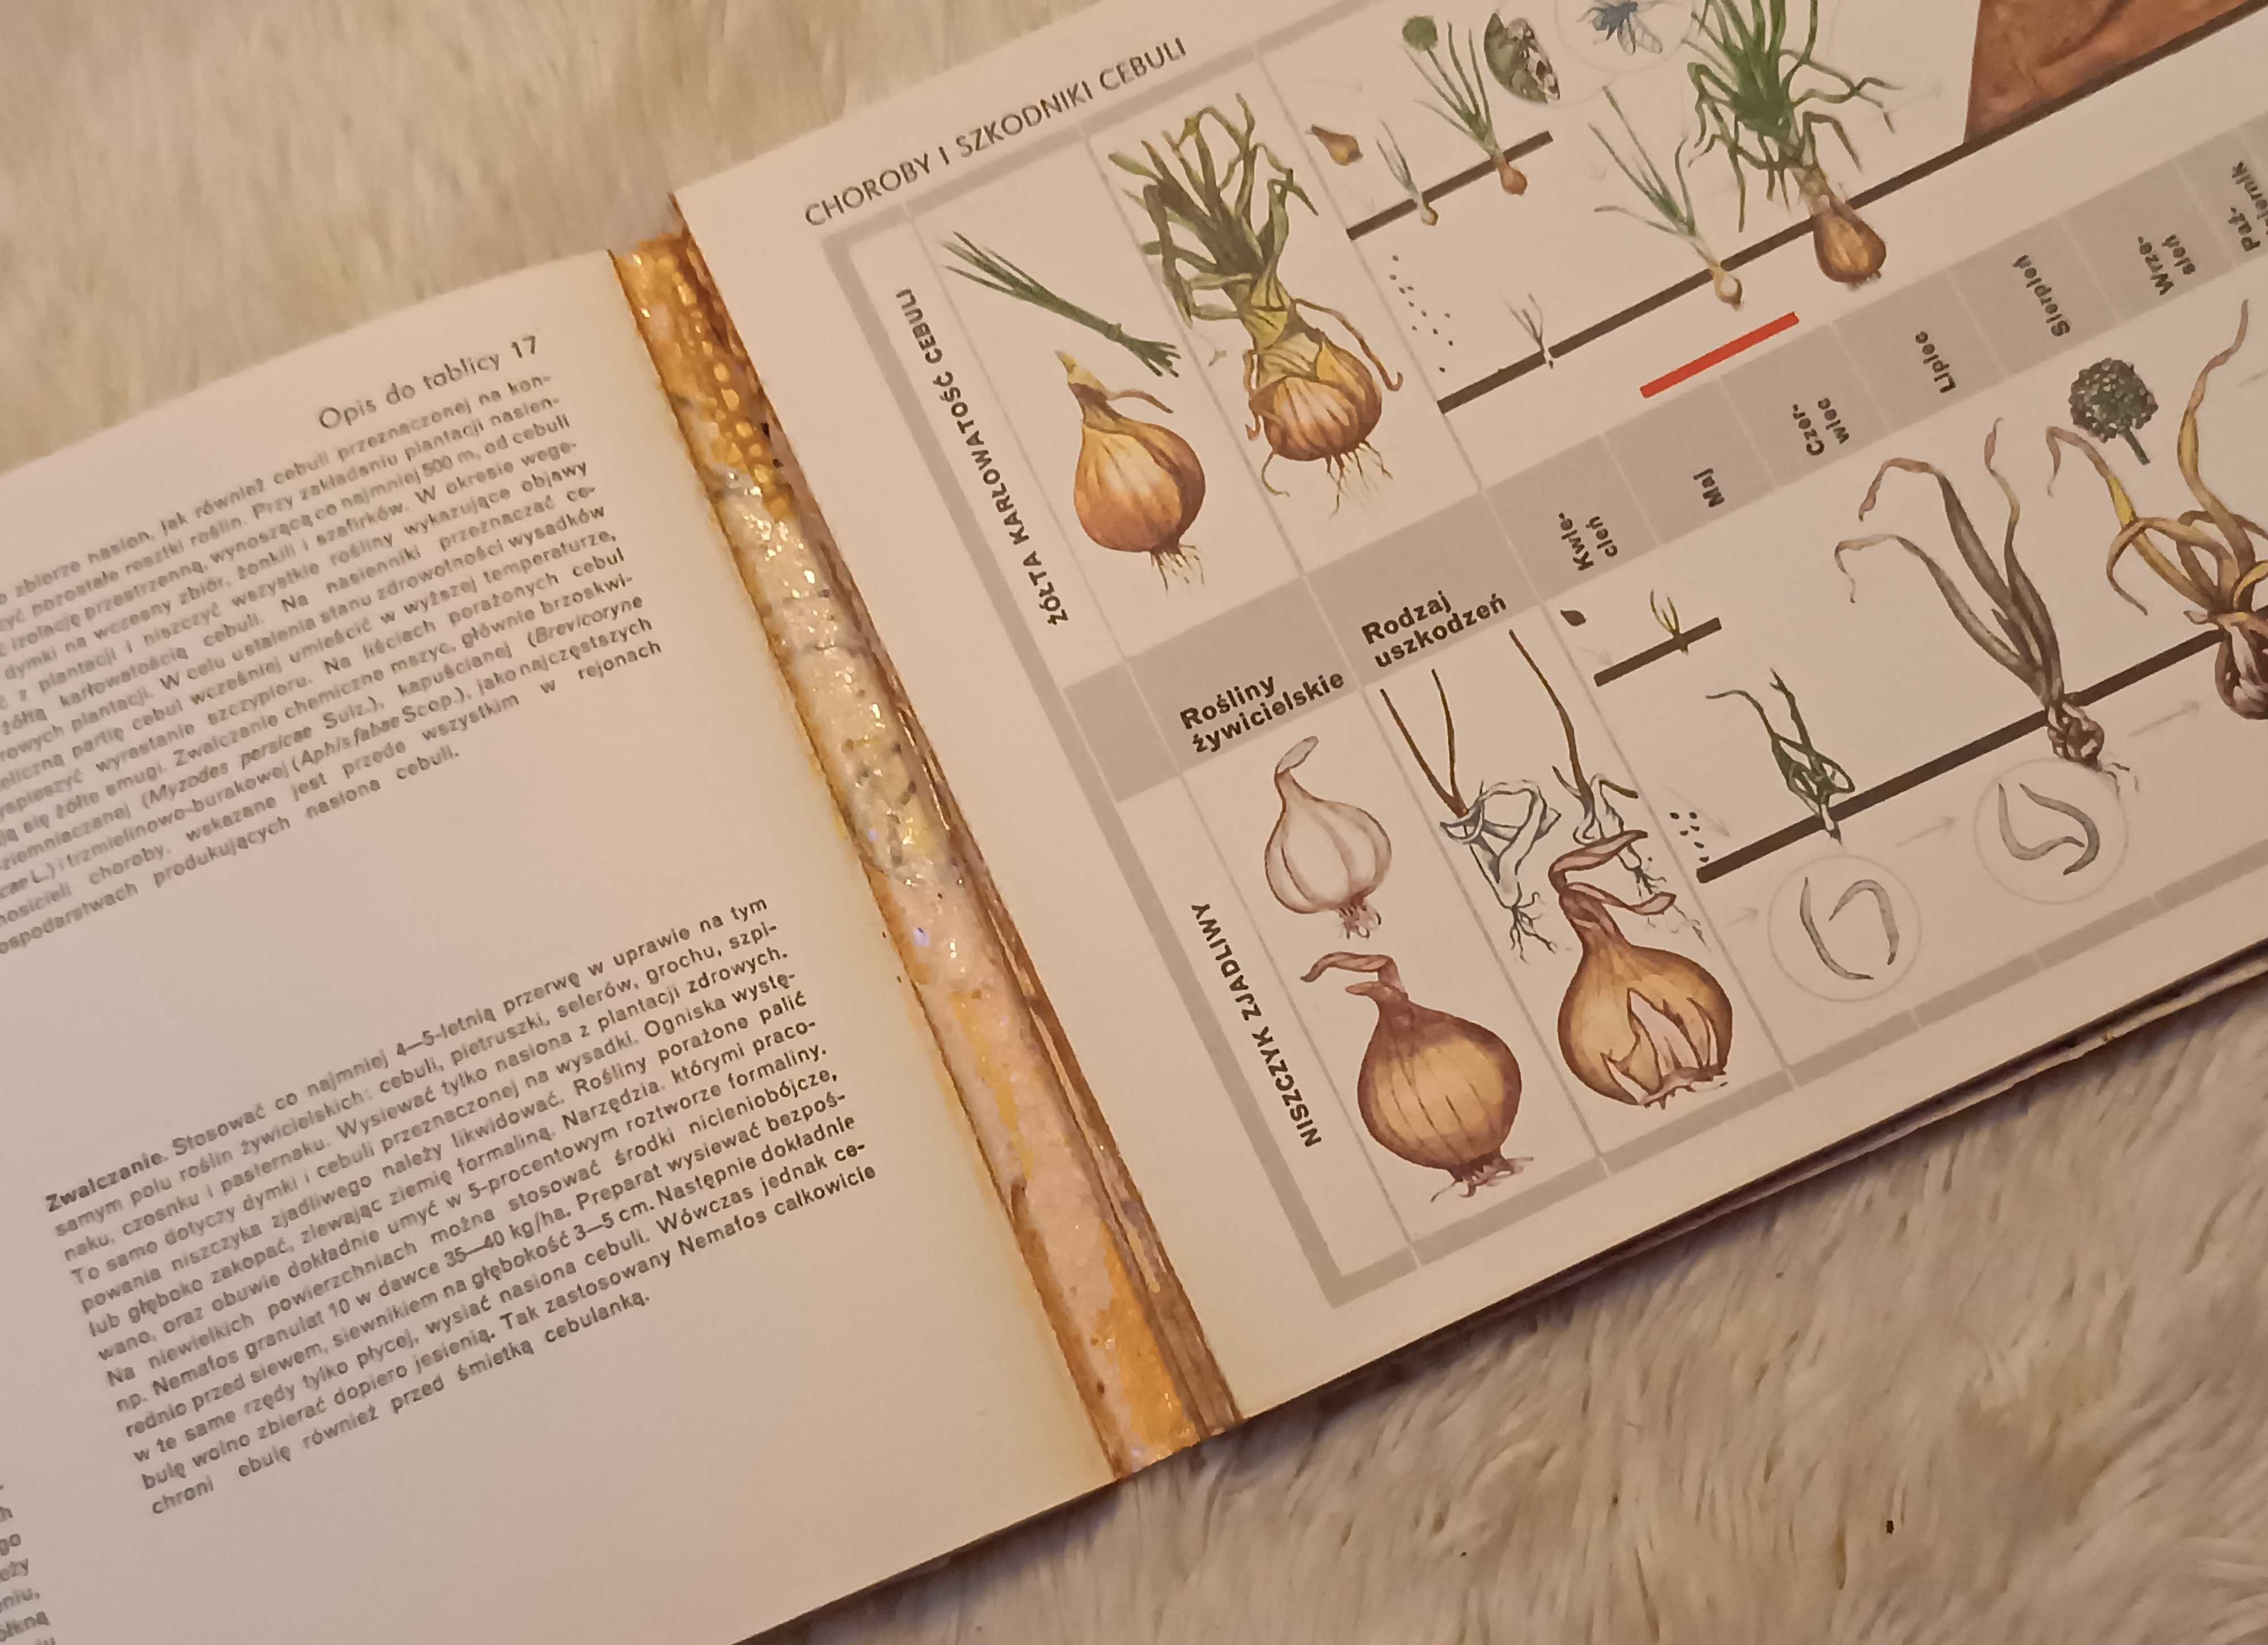 Terminarz ochrony warzyw F Kagan A Studziński Książka dla ogrodnika